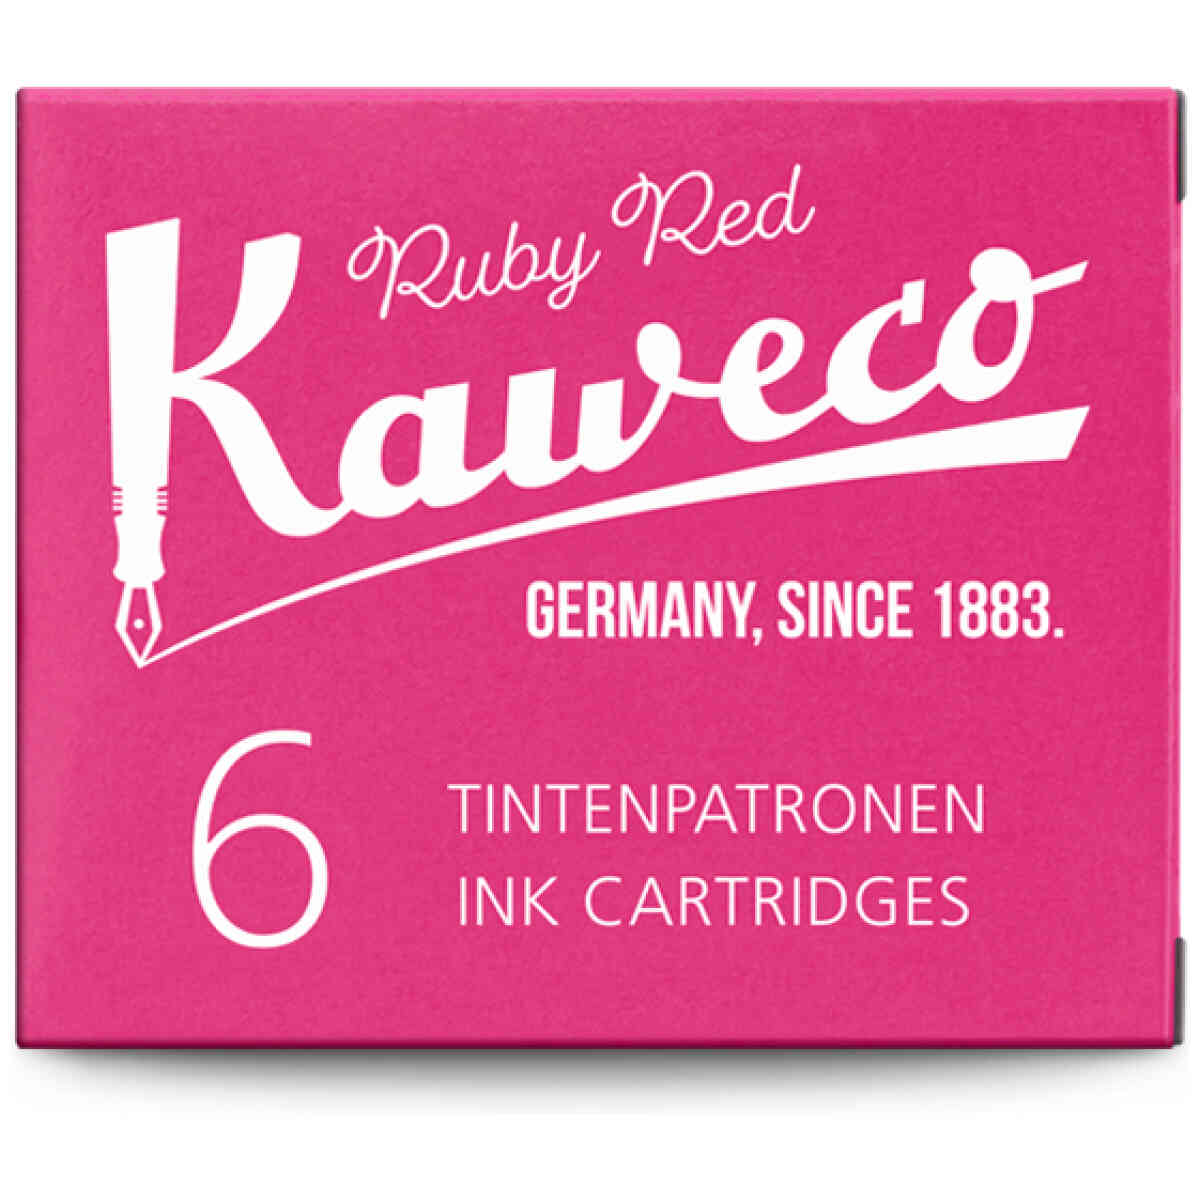 Kaweco Ink 6 pack RubRed web s